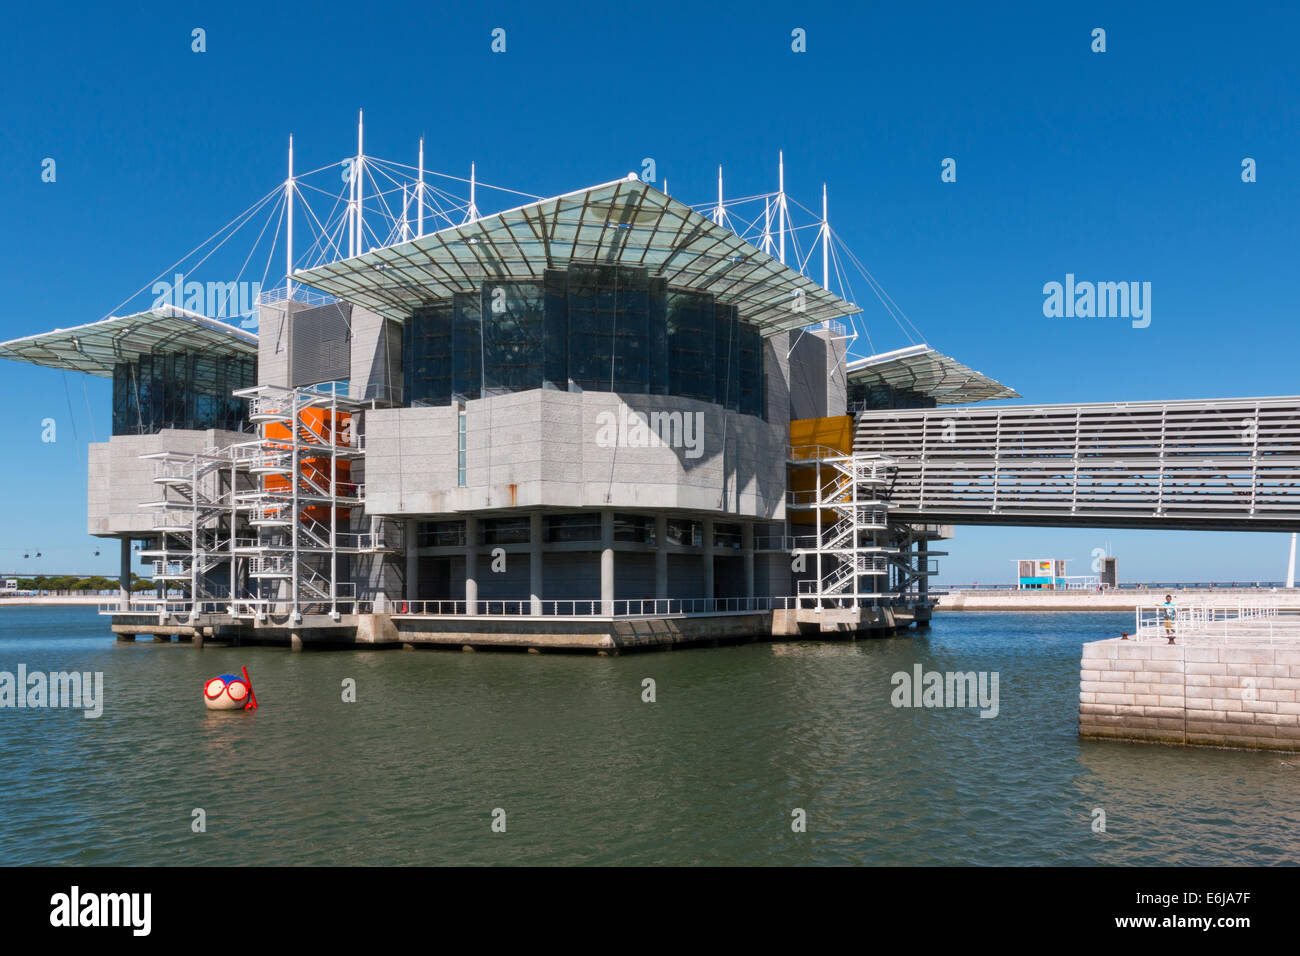 Lisbona, Portogallo - Agosto 07, 2014: Oceanarium di Lisbona, la seconda più grande oceanarium nel mondo e il più grande in Europa. Parque das Nacoes Foto Stock